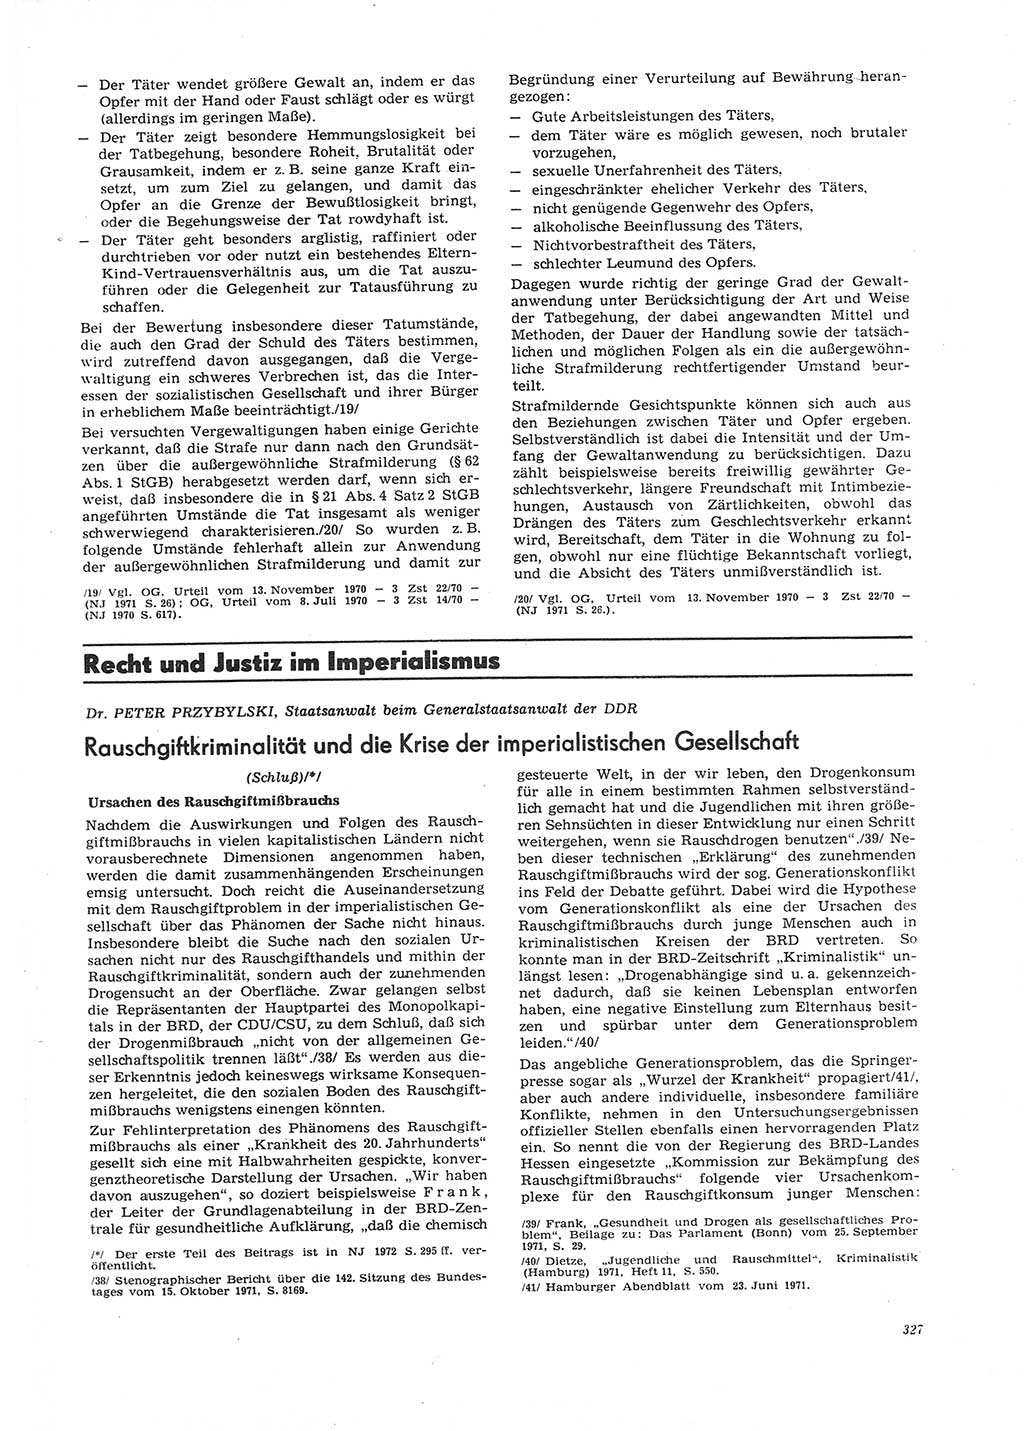 Neue Justiz (NJ), Zeitschrift für Recht und Rechtswissenschaft [Deutsche Demokratische Republik (DDR)], 26. Jahrgang 1972, Seite 327 (NJ DDR 1972, S. 327)